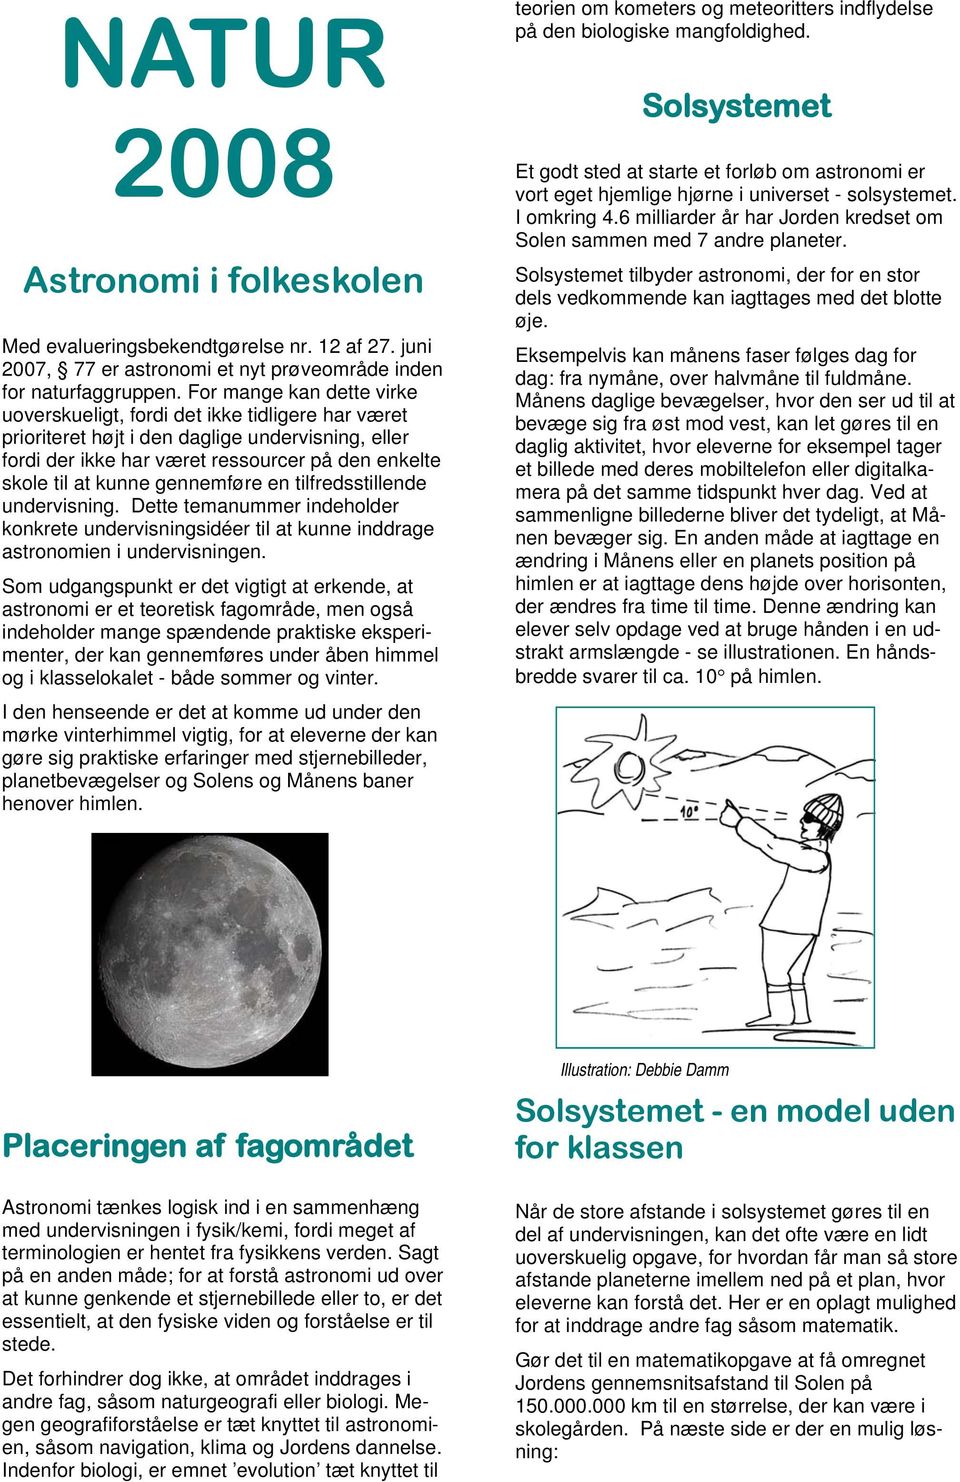 gennemføre en tilfredsstillende undervisning. Dette temanummer indeholder konkrete undervisningsidéer til at kunne inddrage astronomien i undervisningen.